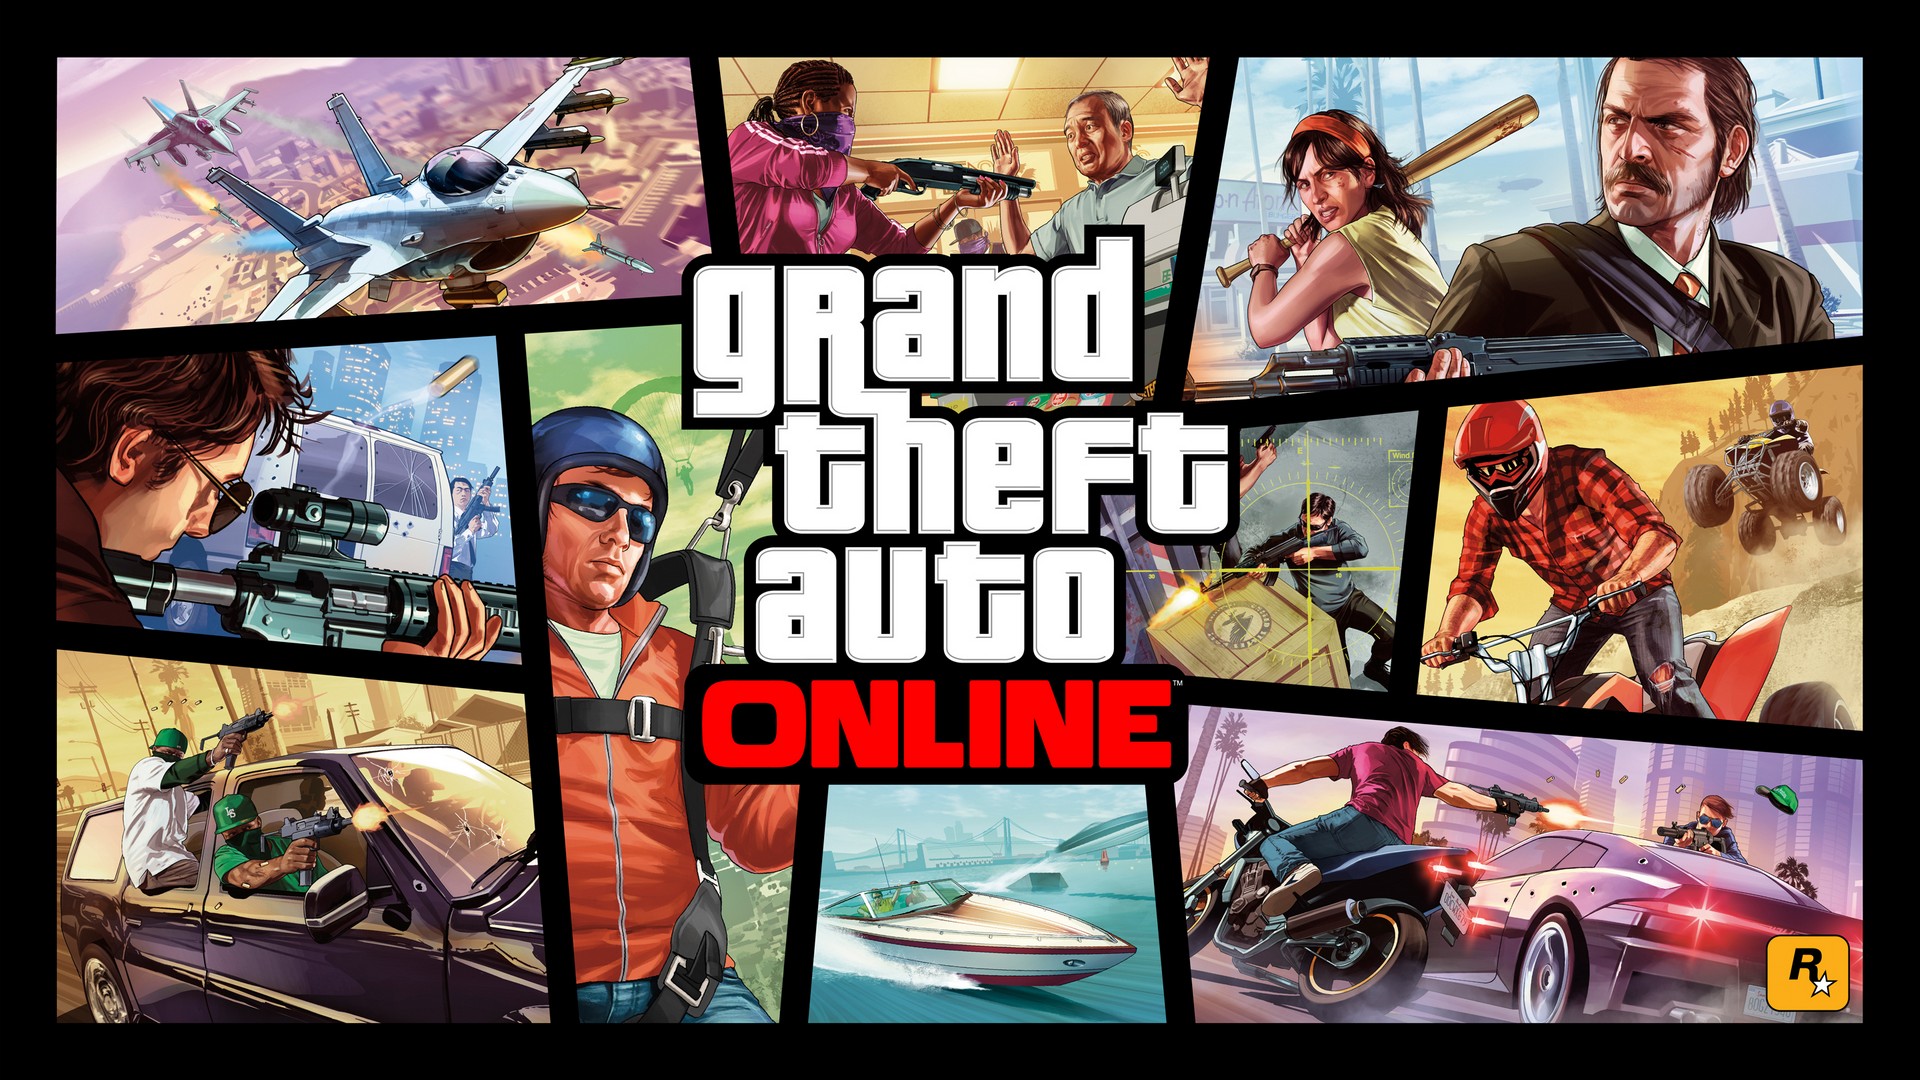 GTA Online cerrará sus servidores en PS3 y Xbox 360 a finales de año